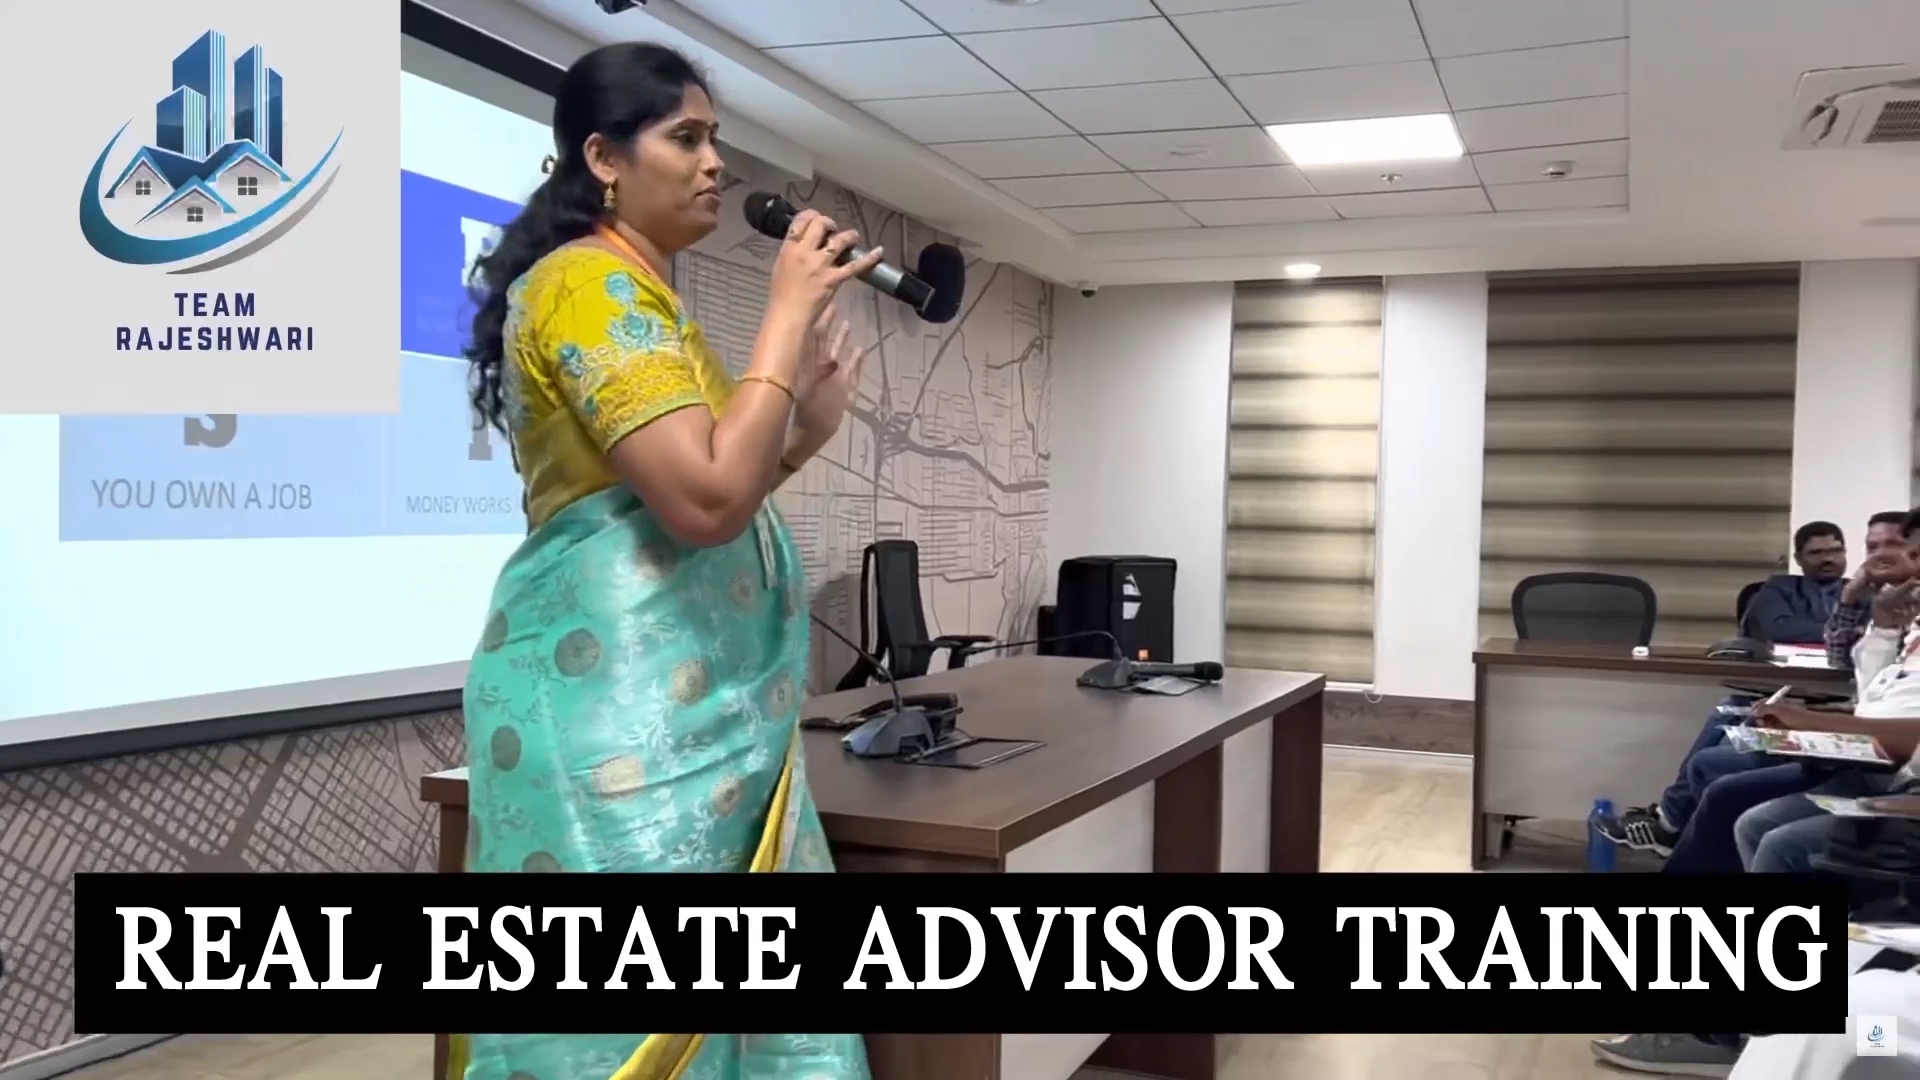 Real estate advisor training